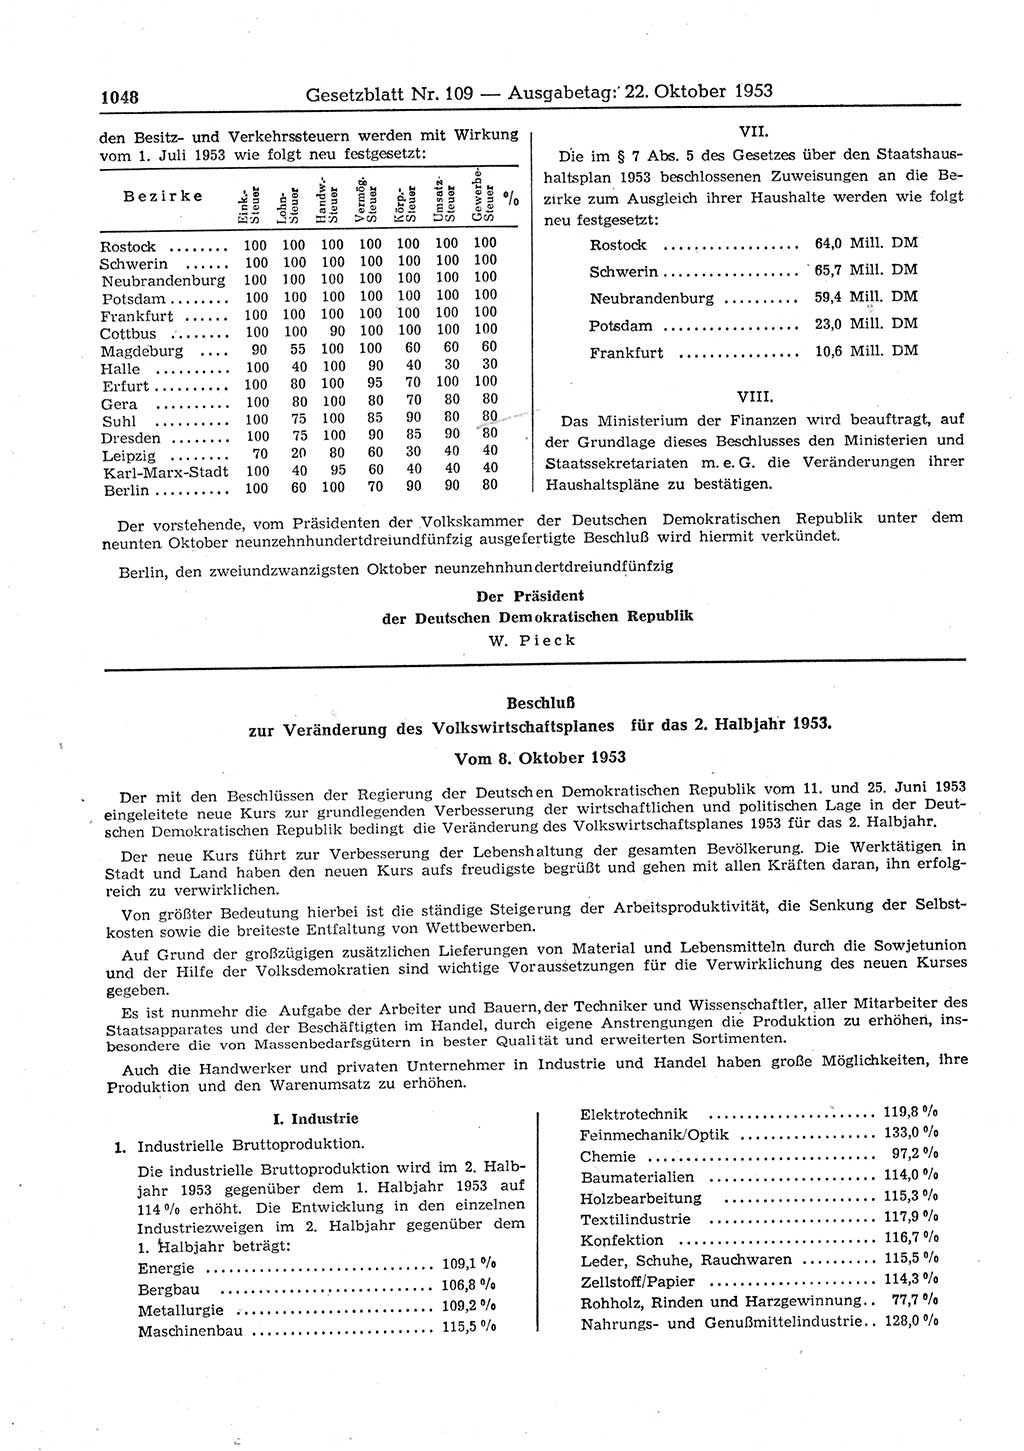 Gesetzblatt (GBl.) der Deutschen Demokratischen Republik (DDR) 1953, Seite 1048 (GBl. DDR 1953, S. 1048)